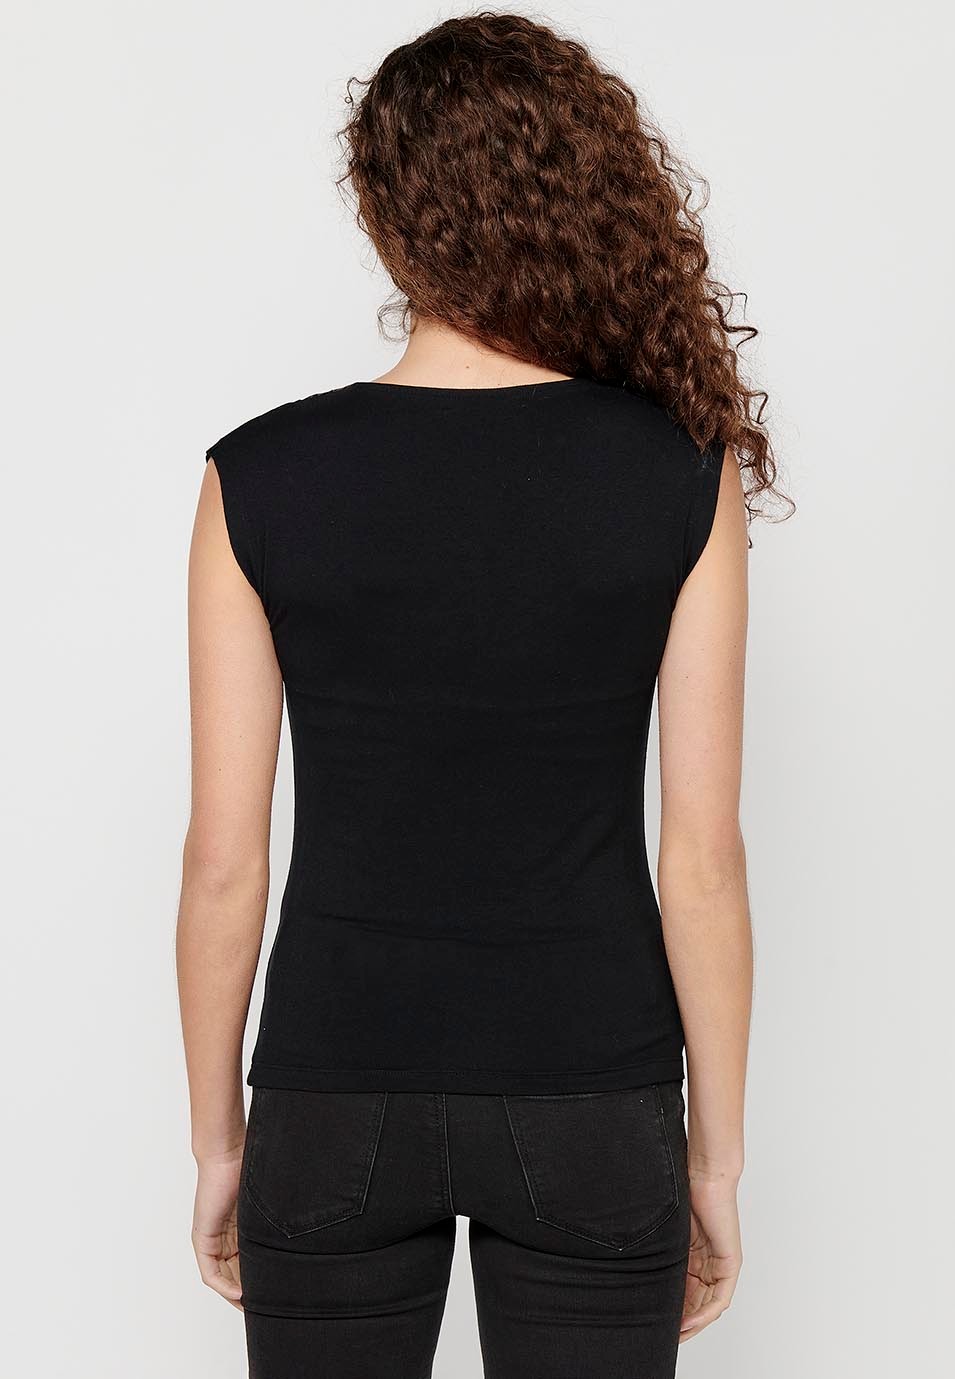 Schwarzes ärmelloses T-Shirt mit bedrucktem Vorderdetail und Rundhalsausschnitt für Damen 6